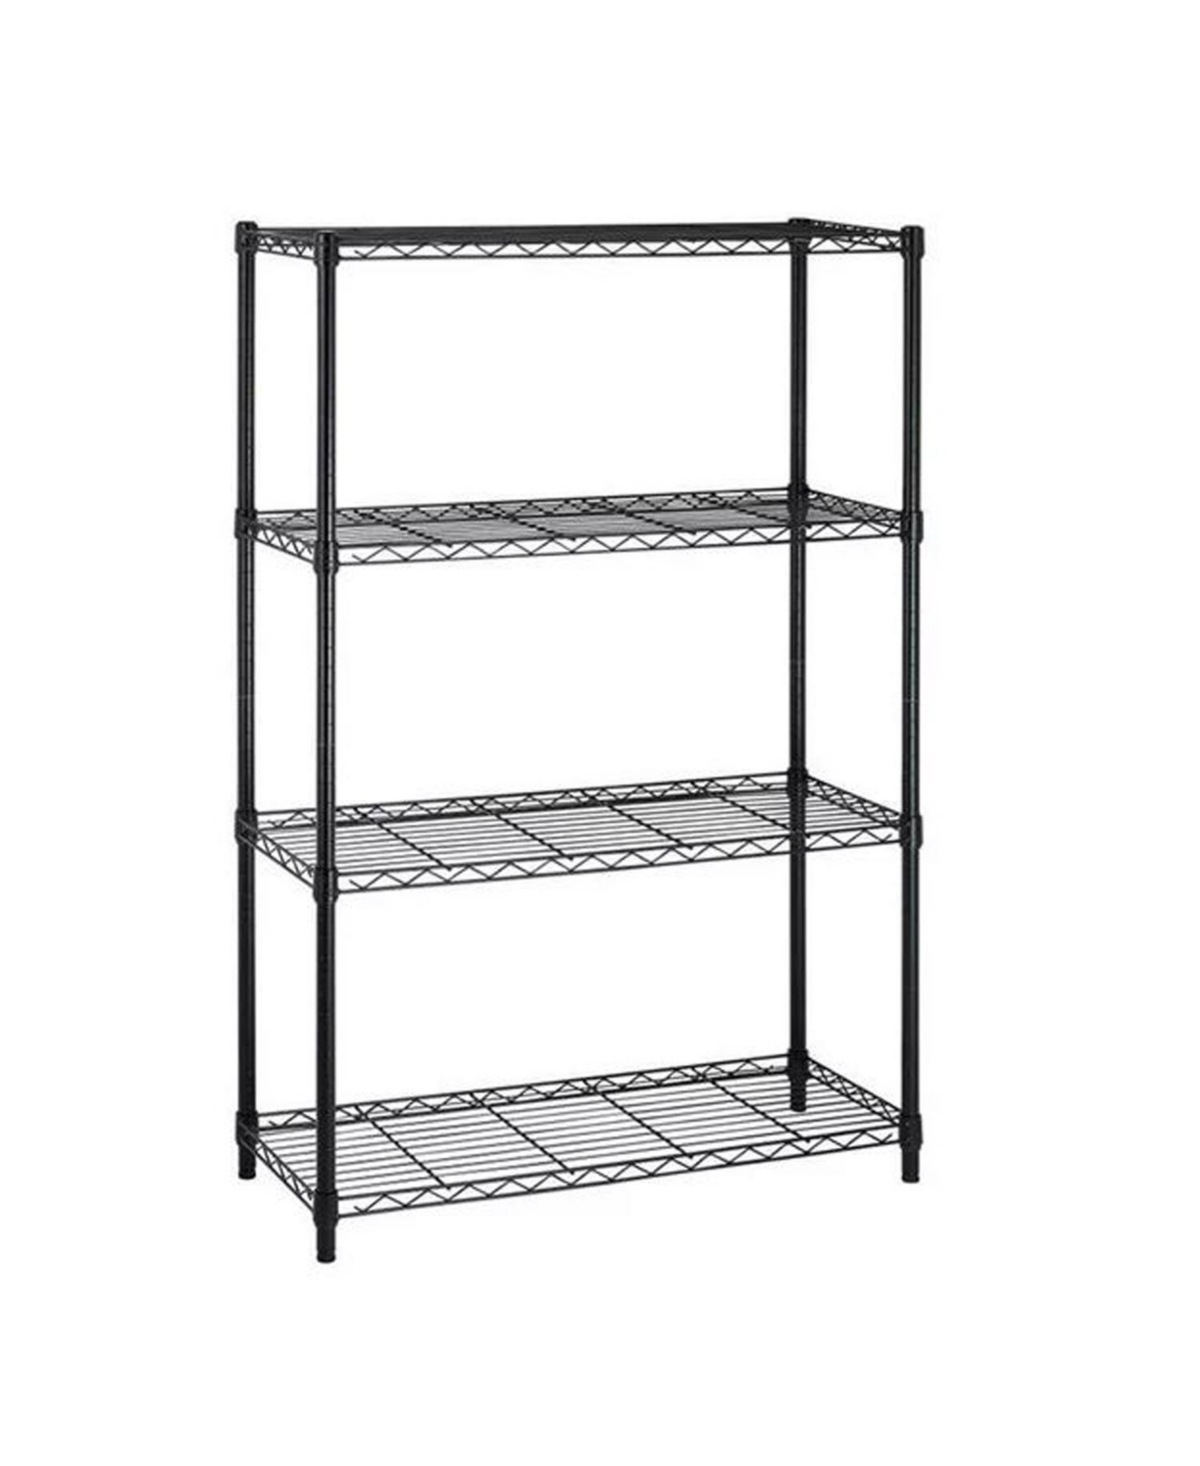 4-Tier Steel Kitchen Storage Shelf Storage Pantry Organizer in Black - Black